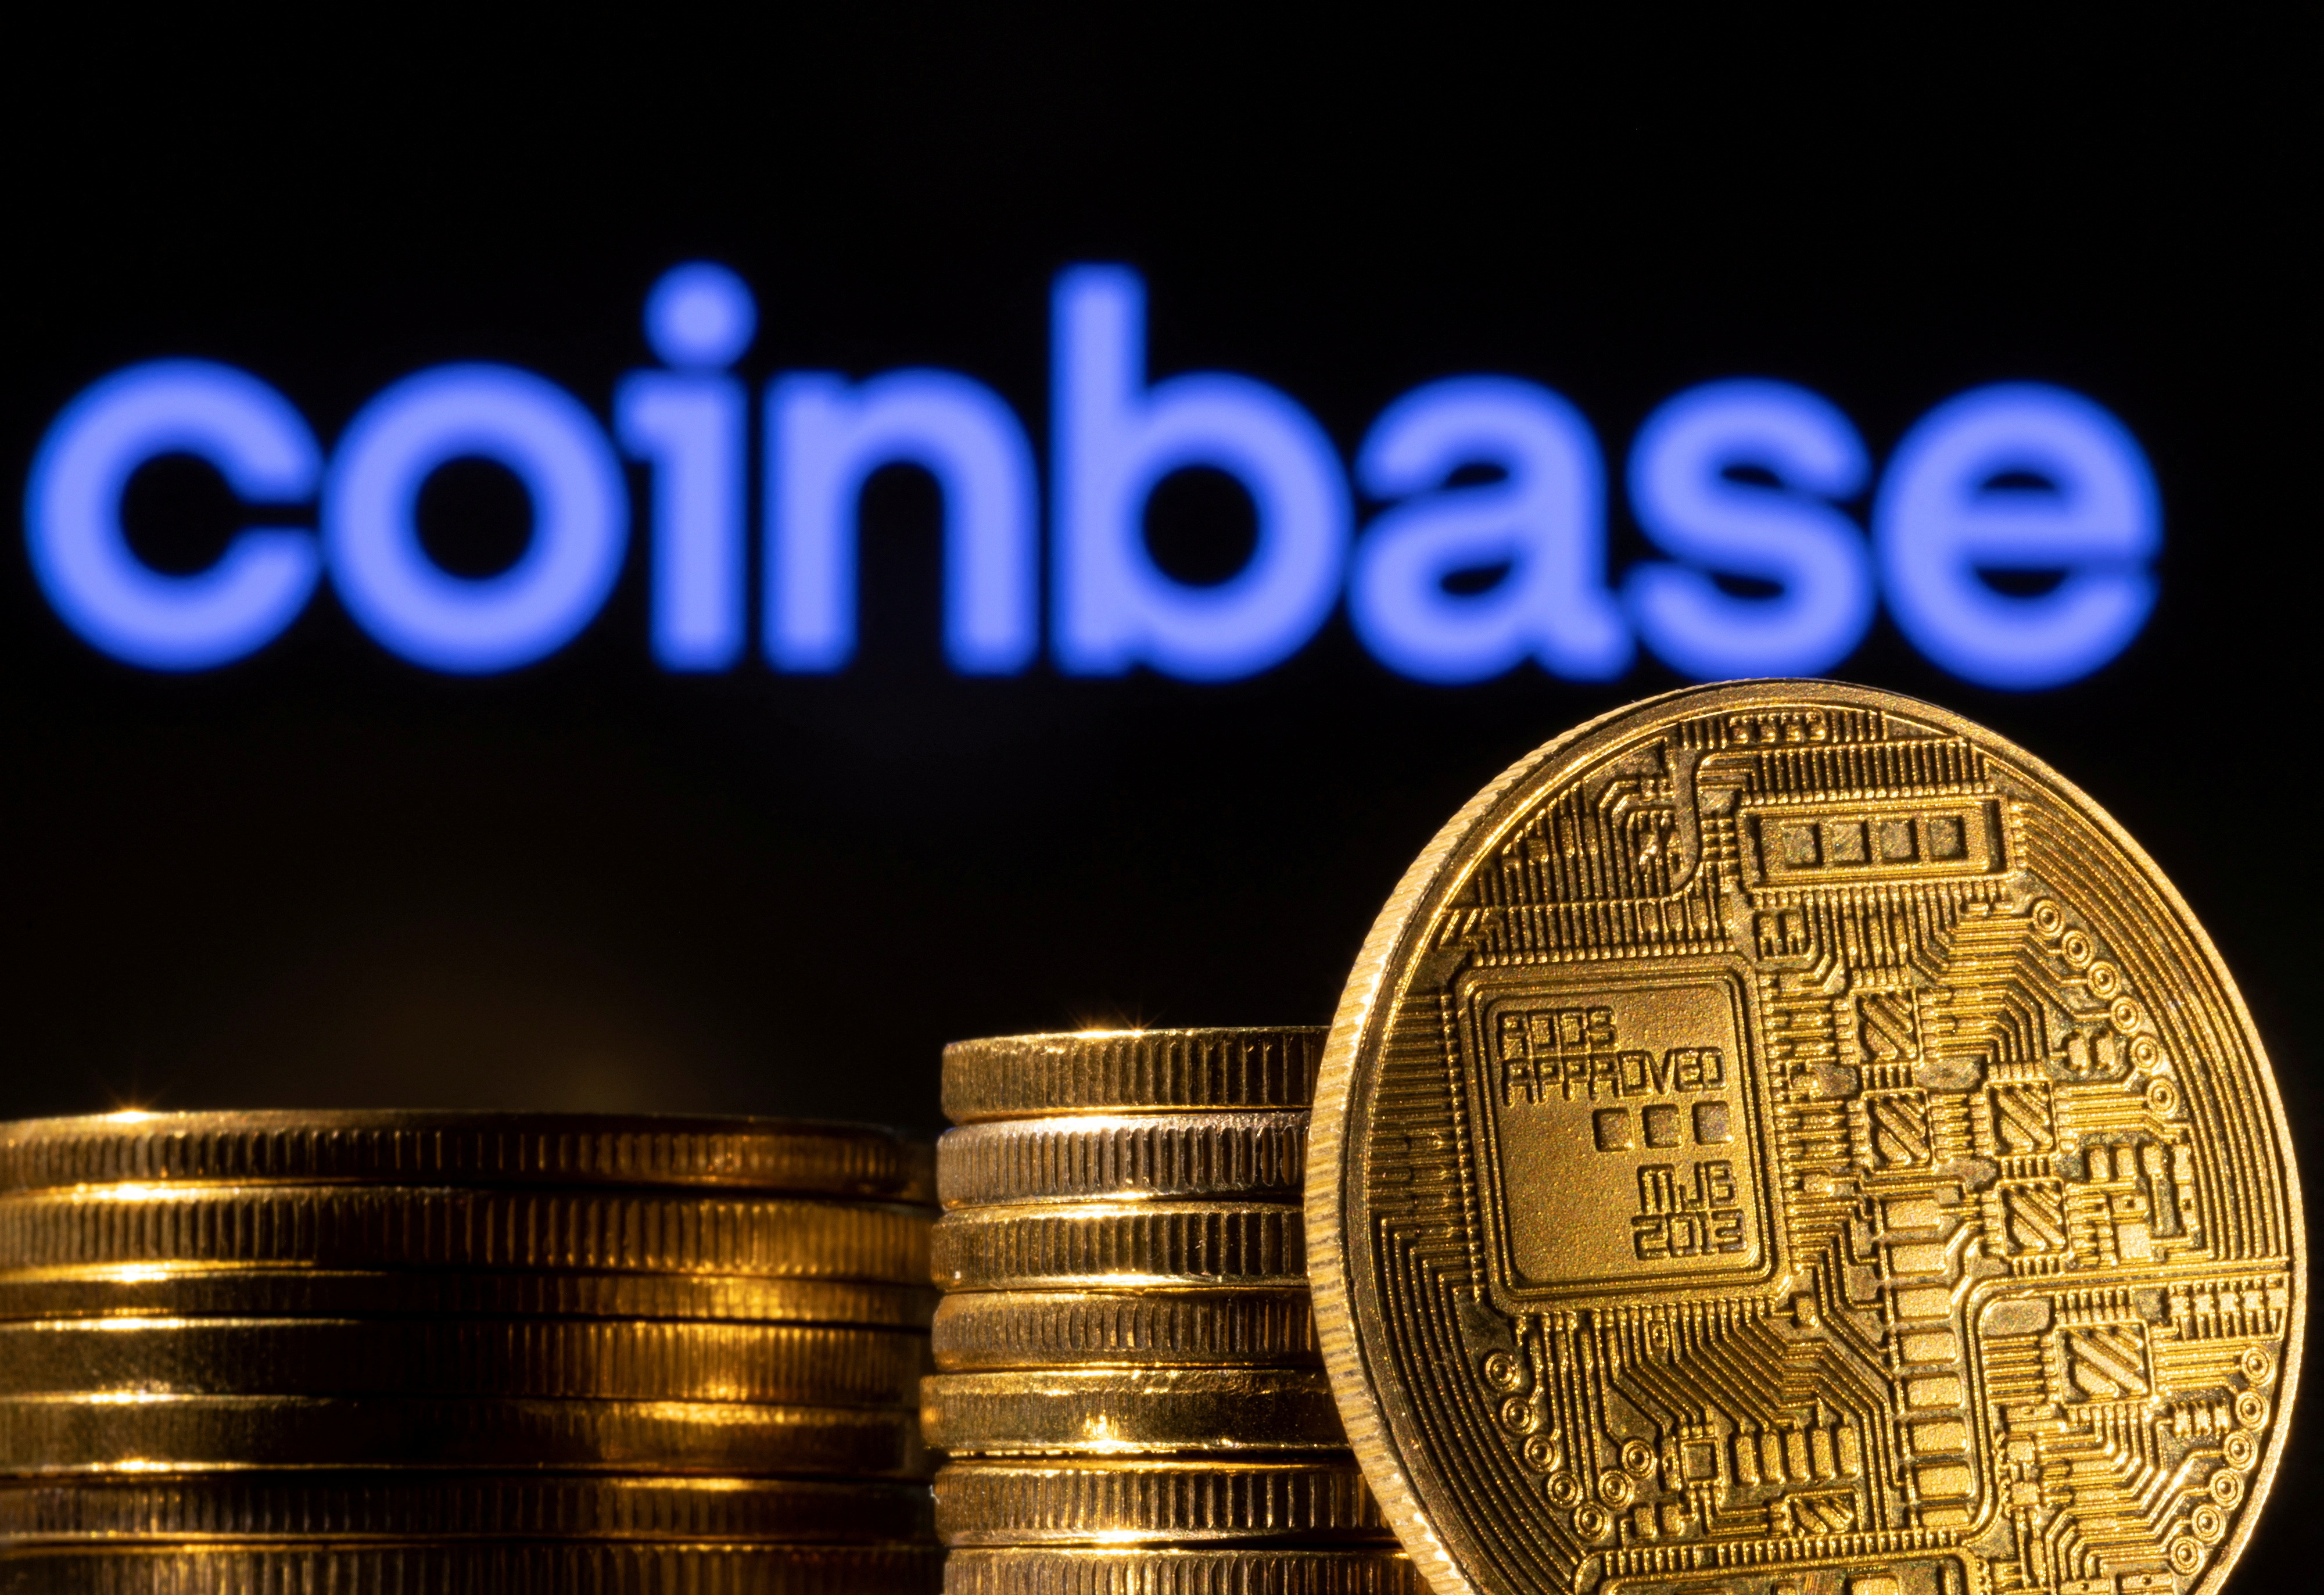 Die Abbildung zeigt eine Darstellung der Kryptowährung und des Coinbase-Logos